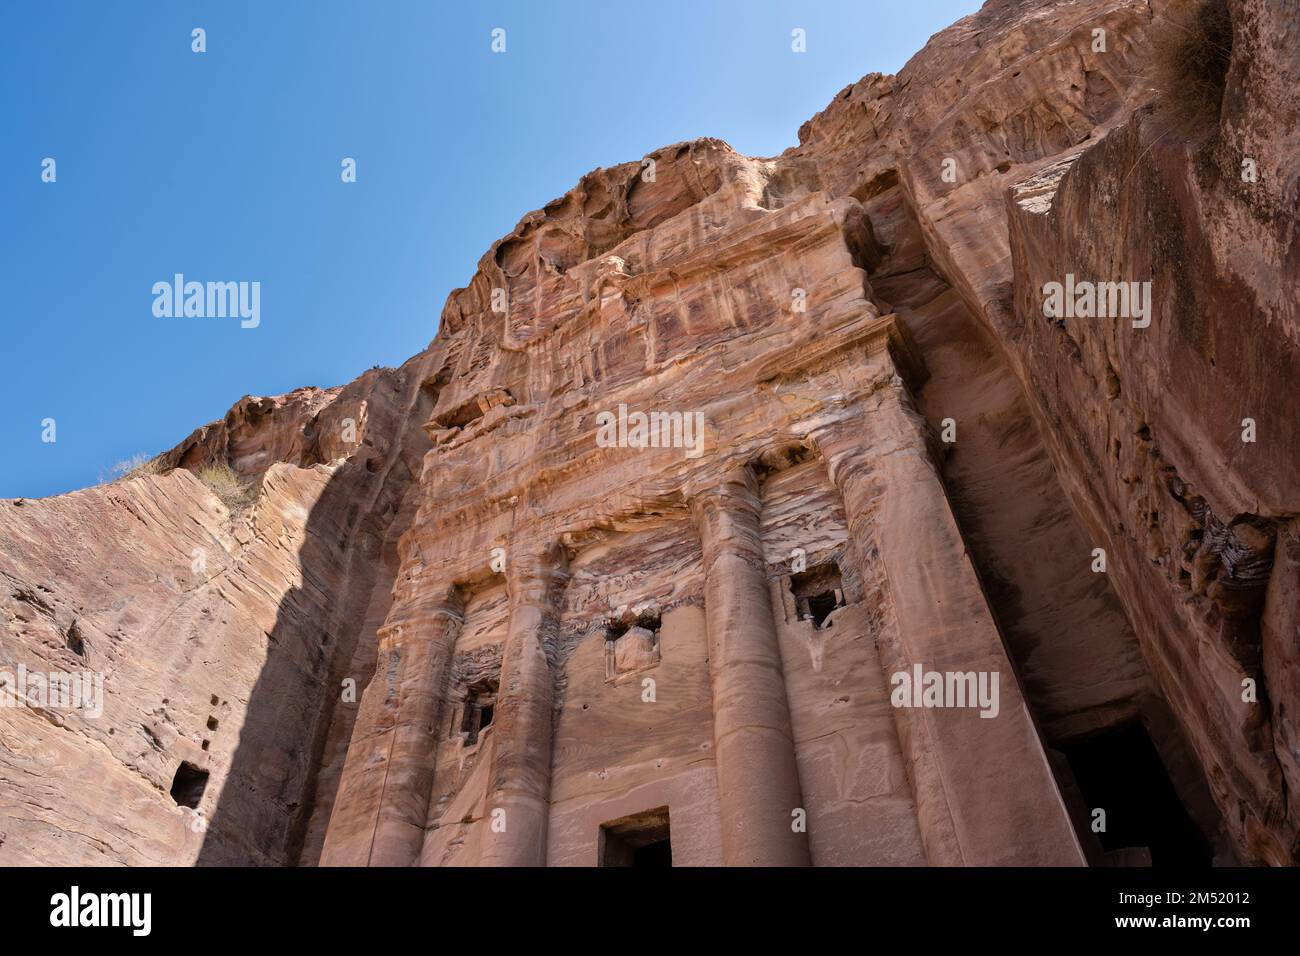 La facciata della tomba dell'urna a Petra, Giordania, chiamata anche la tomba reale di Malchus Foto Stock